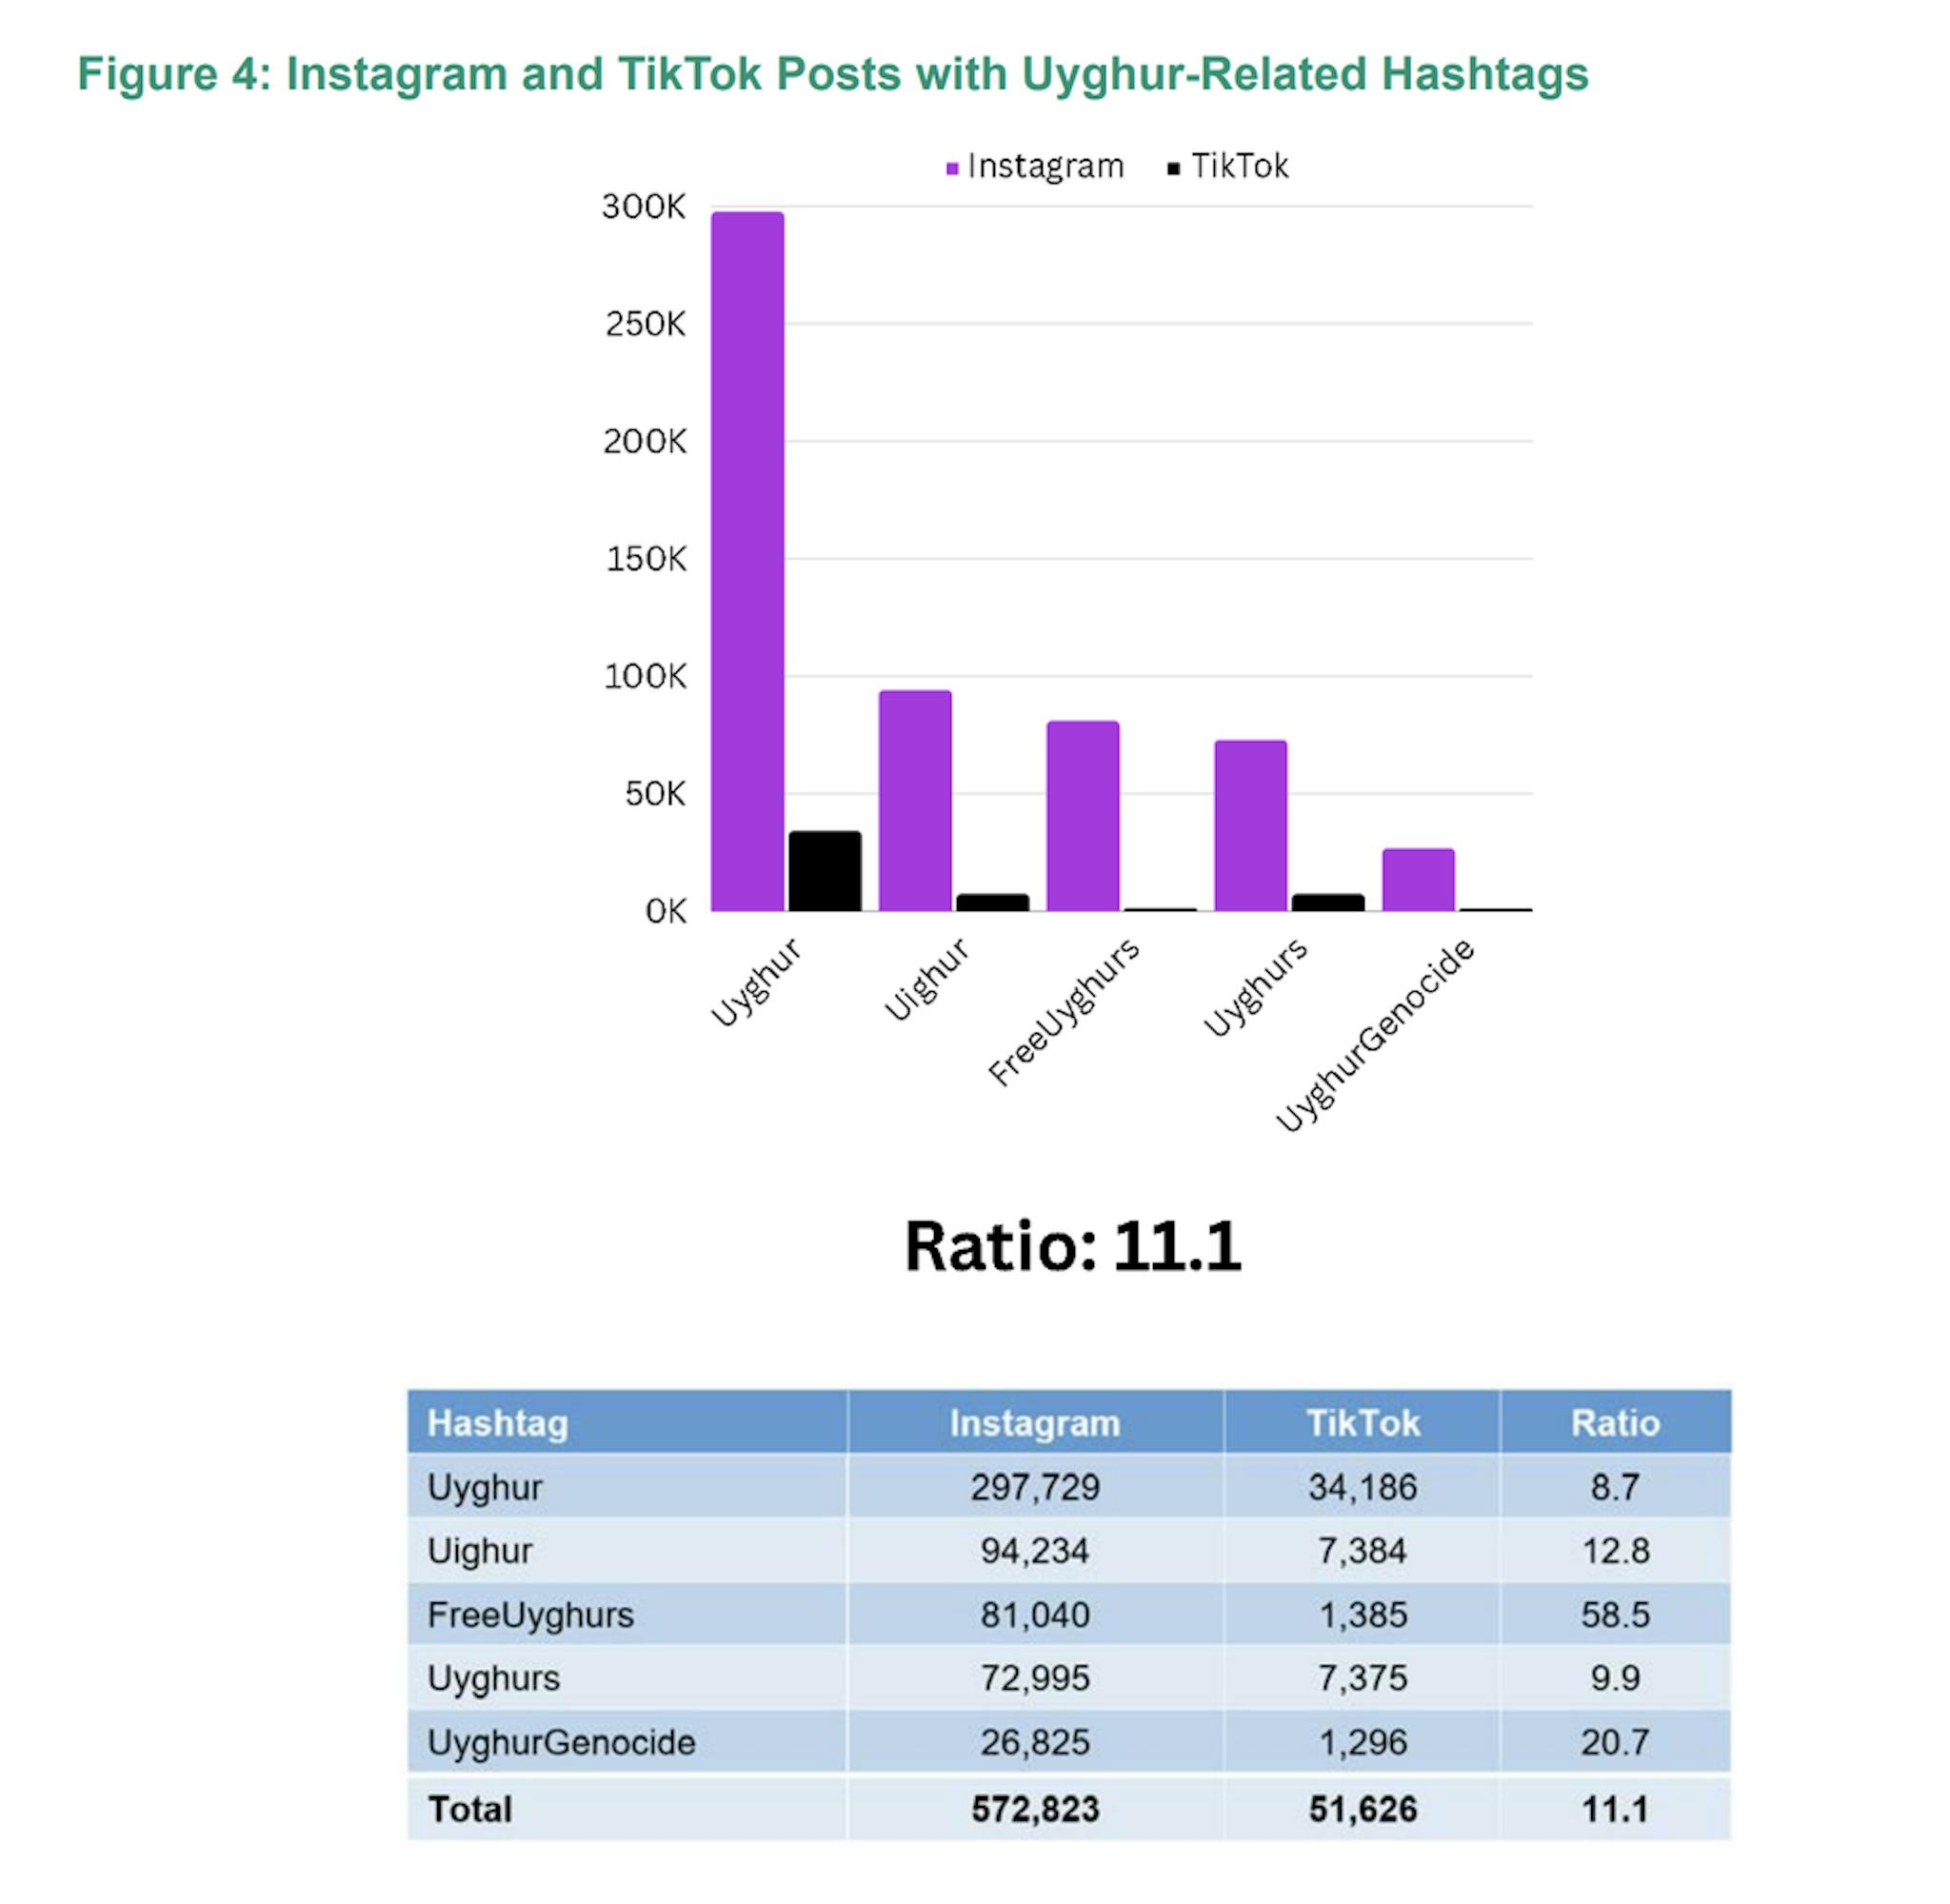 Tổng tỷ lệ bài đăng có hashtag liên quan đến người Duy Ngô Nhĩ giữa hai nền tảng là 11,1. Hashtag có tỷ lệ cao nhất là freeuyghurs. Tuy nhiên, đối với các chủ đề nhạy cảm với Chính phủ Trung Quốc, tỷ lệ này cao hơn đáng kể (>10:1), cho thấy khả năng thao túng trong việc quảng bá hoặc ngăn chặn nội dung phù hợp với lợi ích của Chính phủ Trung Quốc.